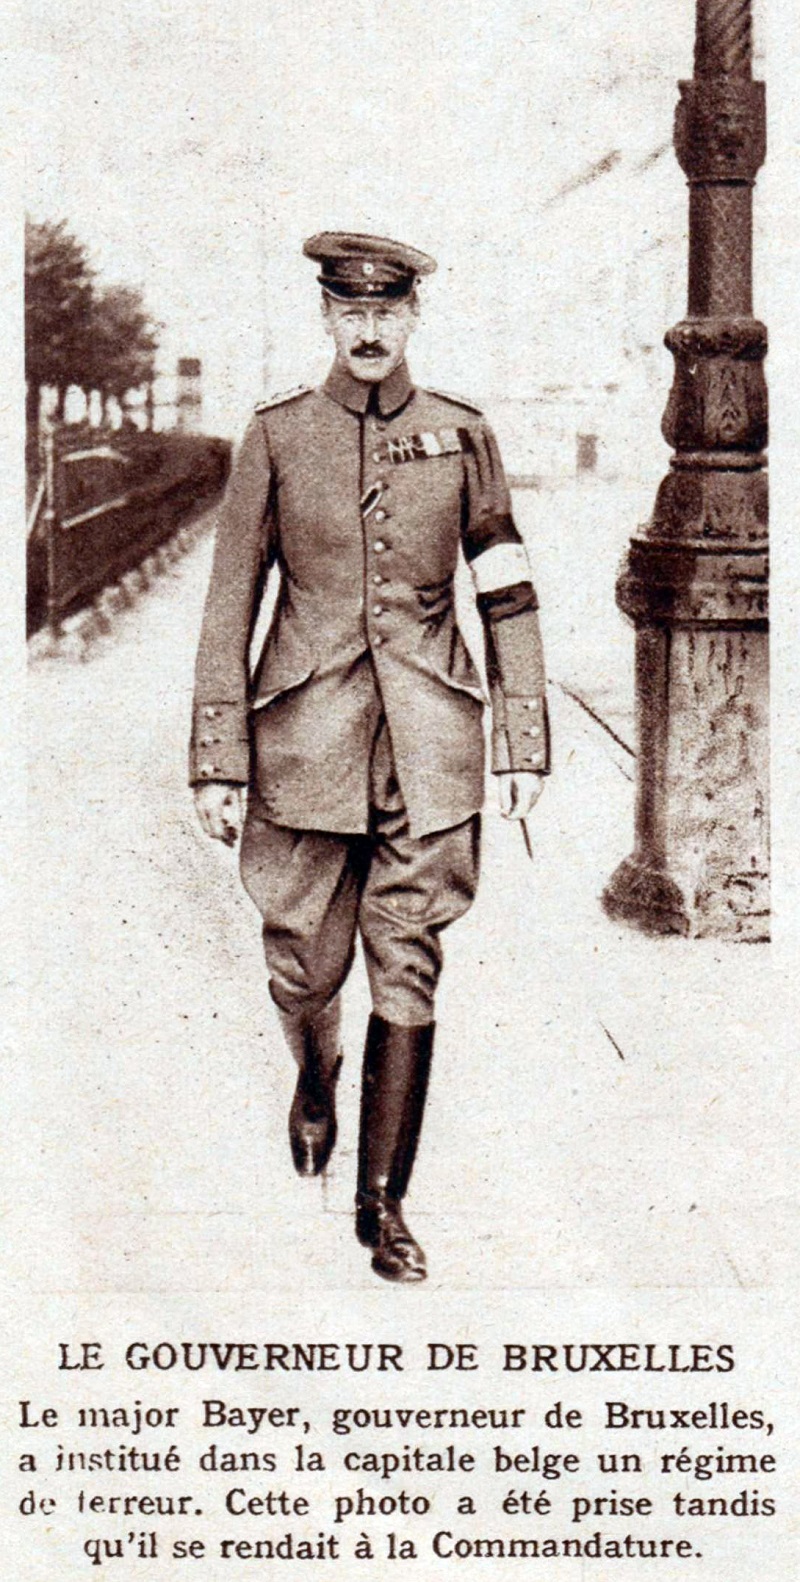 Maximilian Bayer in de Wetstraat, 1914